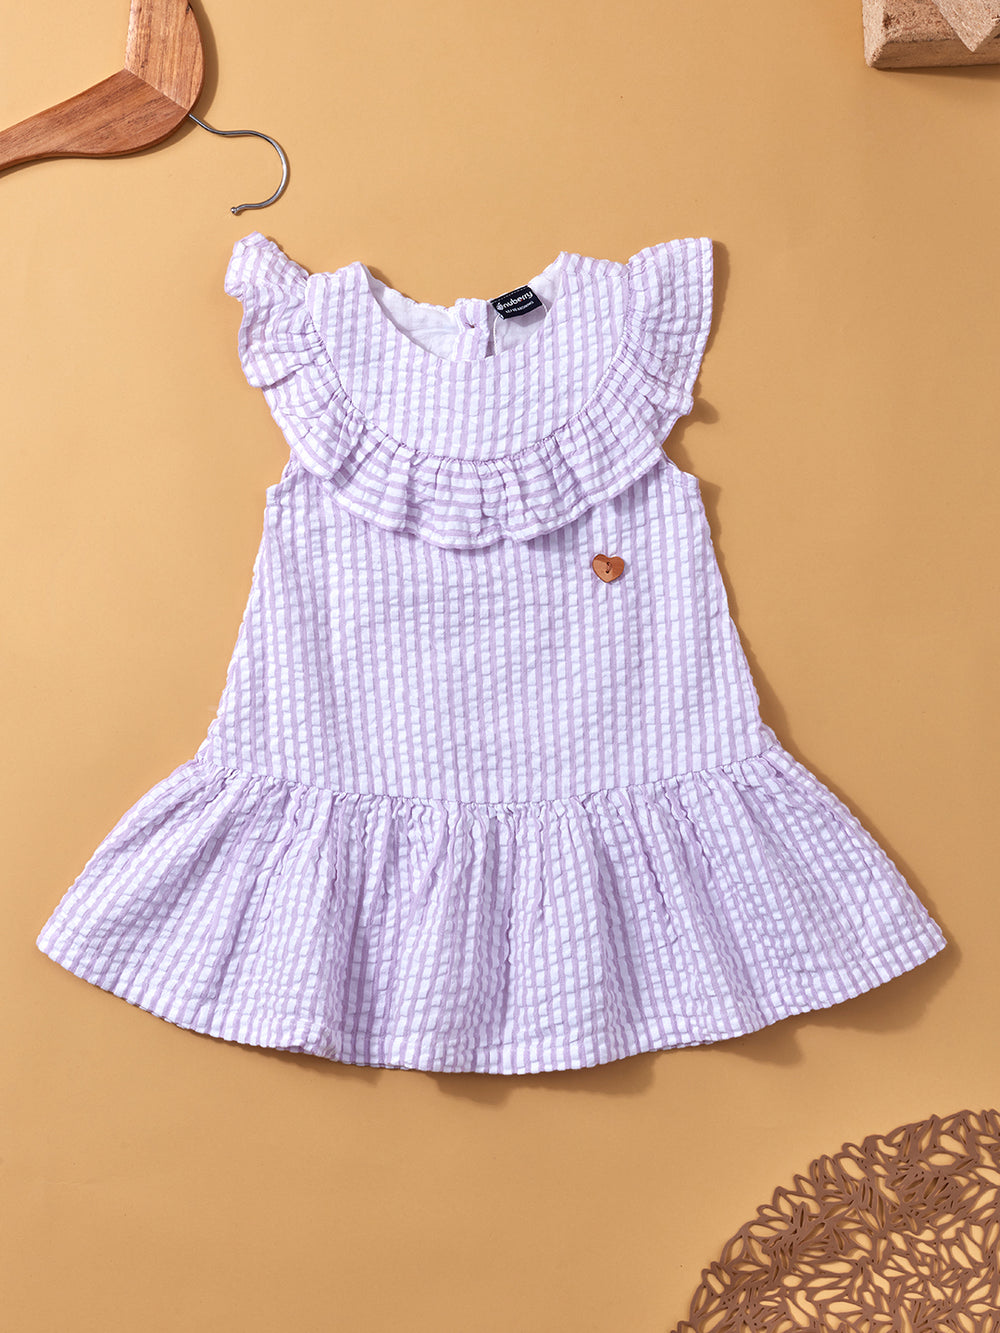 Nuberry Girl Frock Dress Seersucker Fabric - Lavender